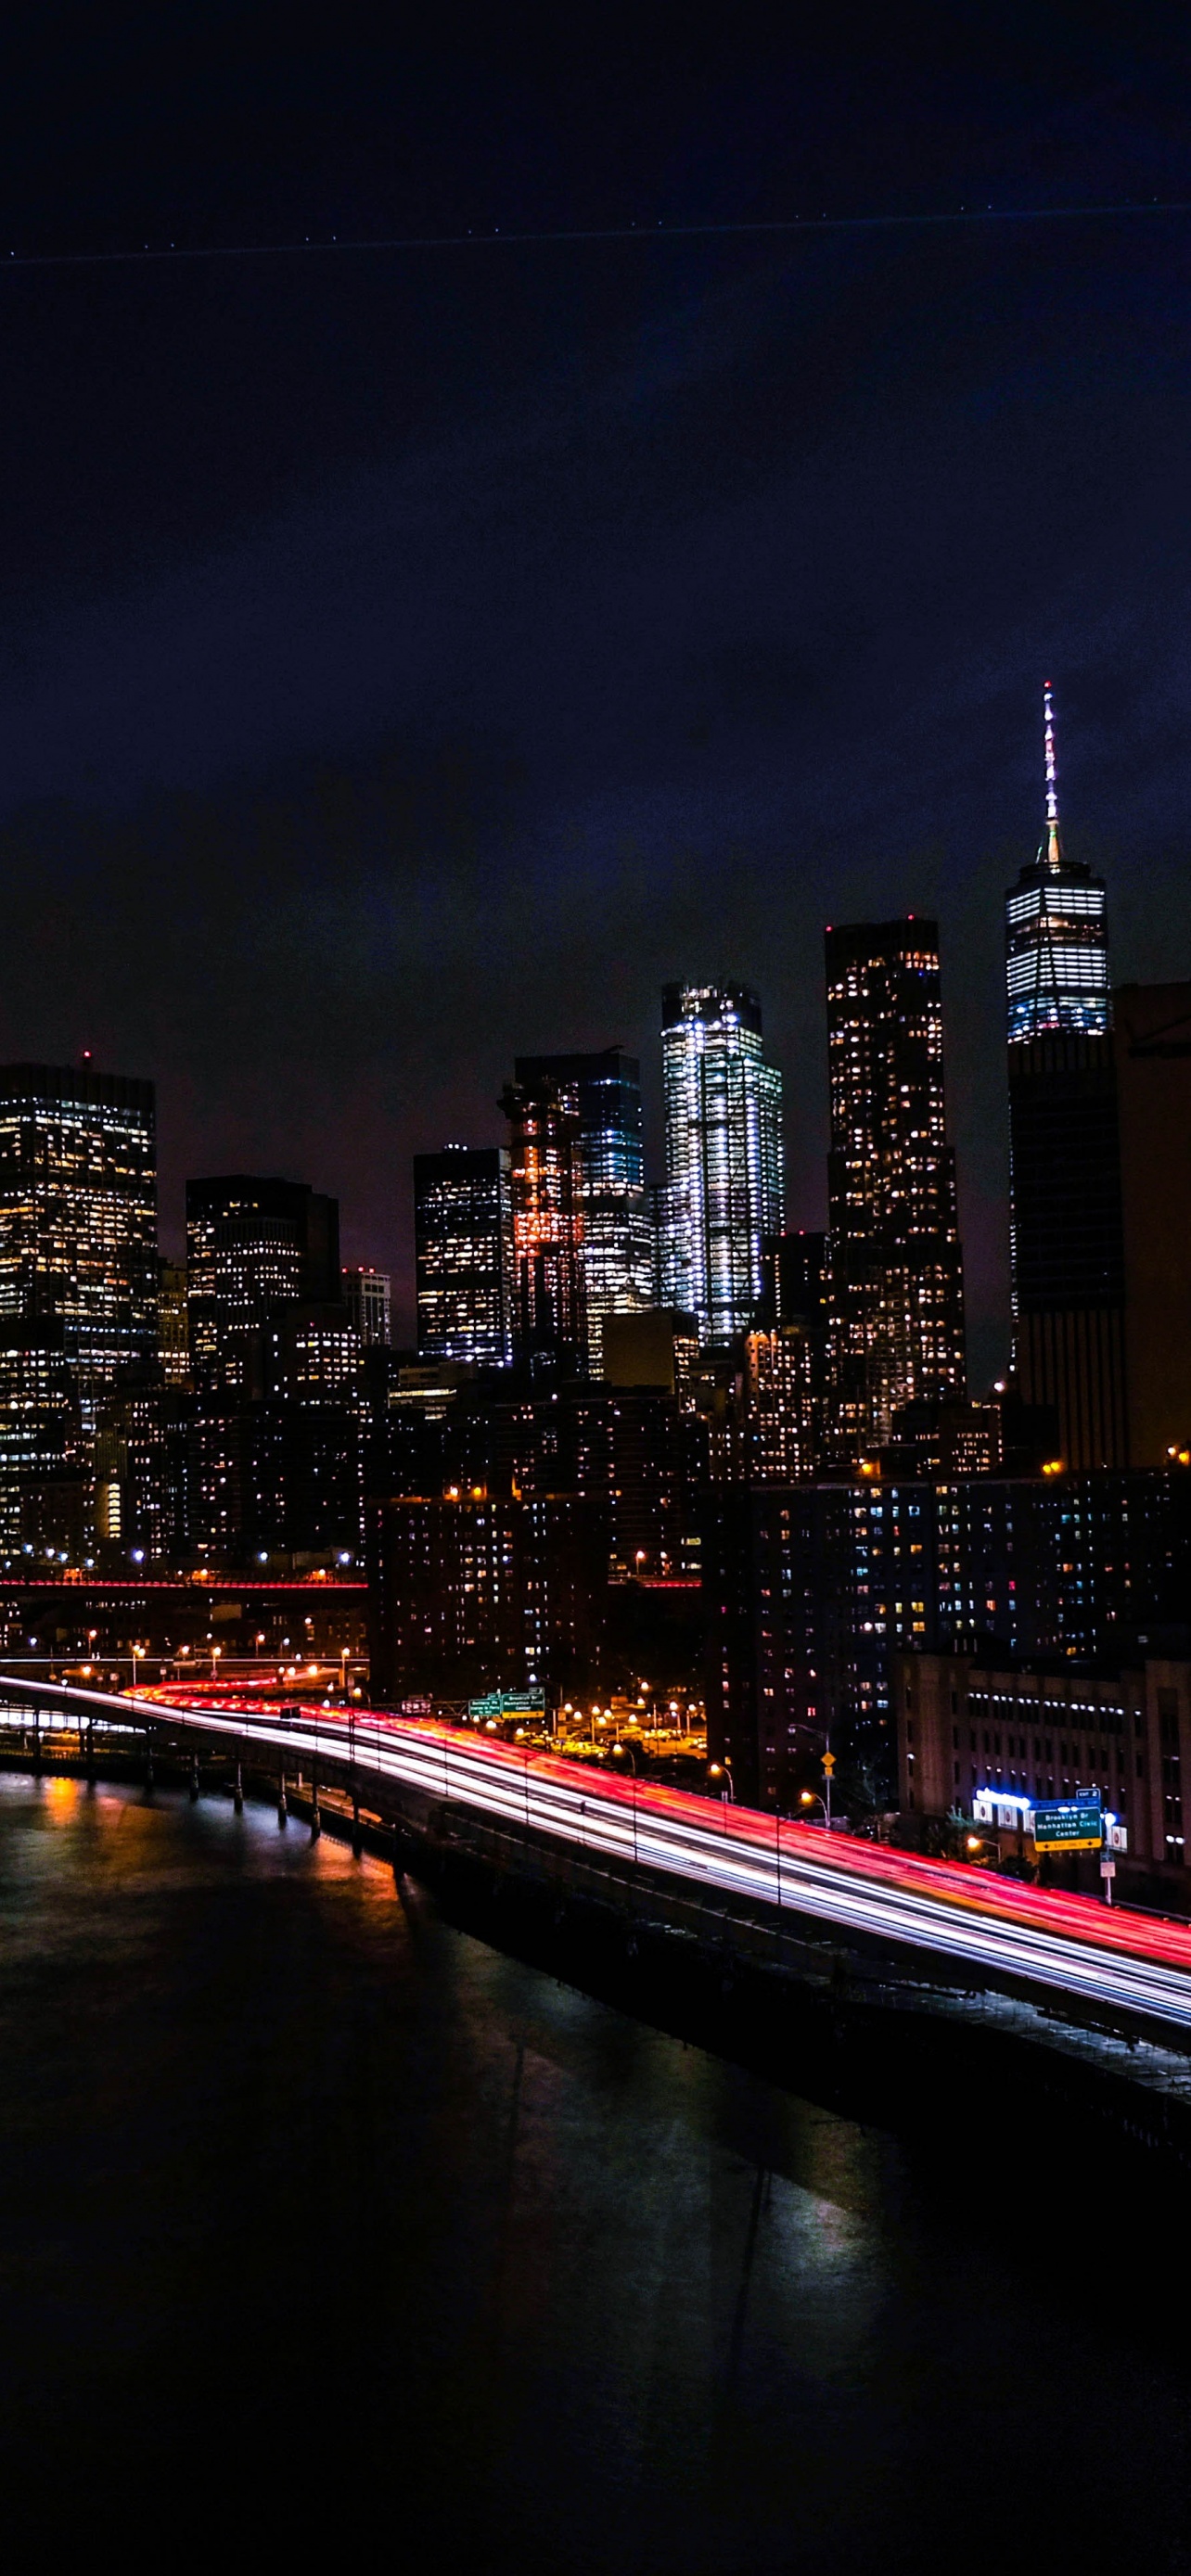 Những đường phố rực rỡ ánh đèn, tòa nhà cao chọc trời, và sông Hudson êm đềm hòa cùng làn gió đêm đã tạo nên bức tranh huyền ảo mà chỉ có New York đêm mới có. Và giờ đây, với hình nền New York đêm 4K, bạn có thể đón nhận cảm giác thật sự như đang đứng ngay trên phố của \